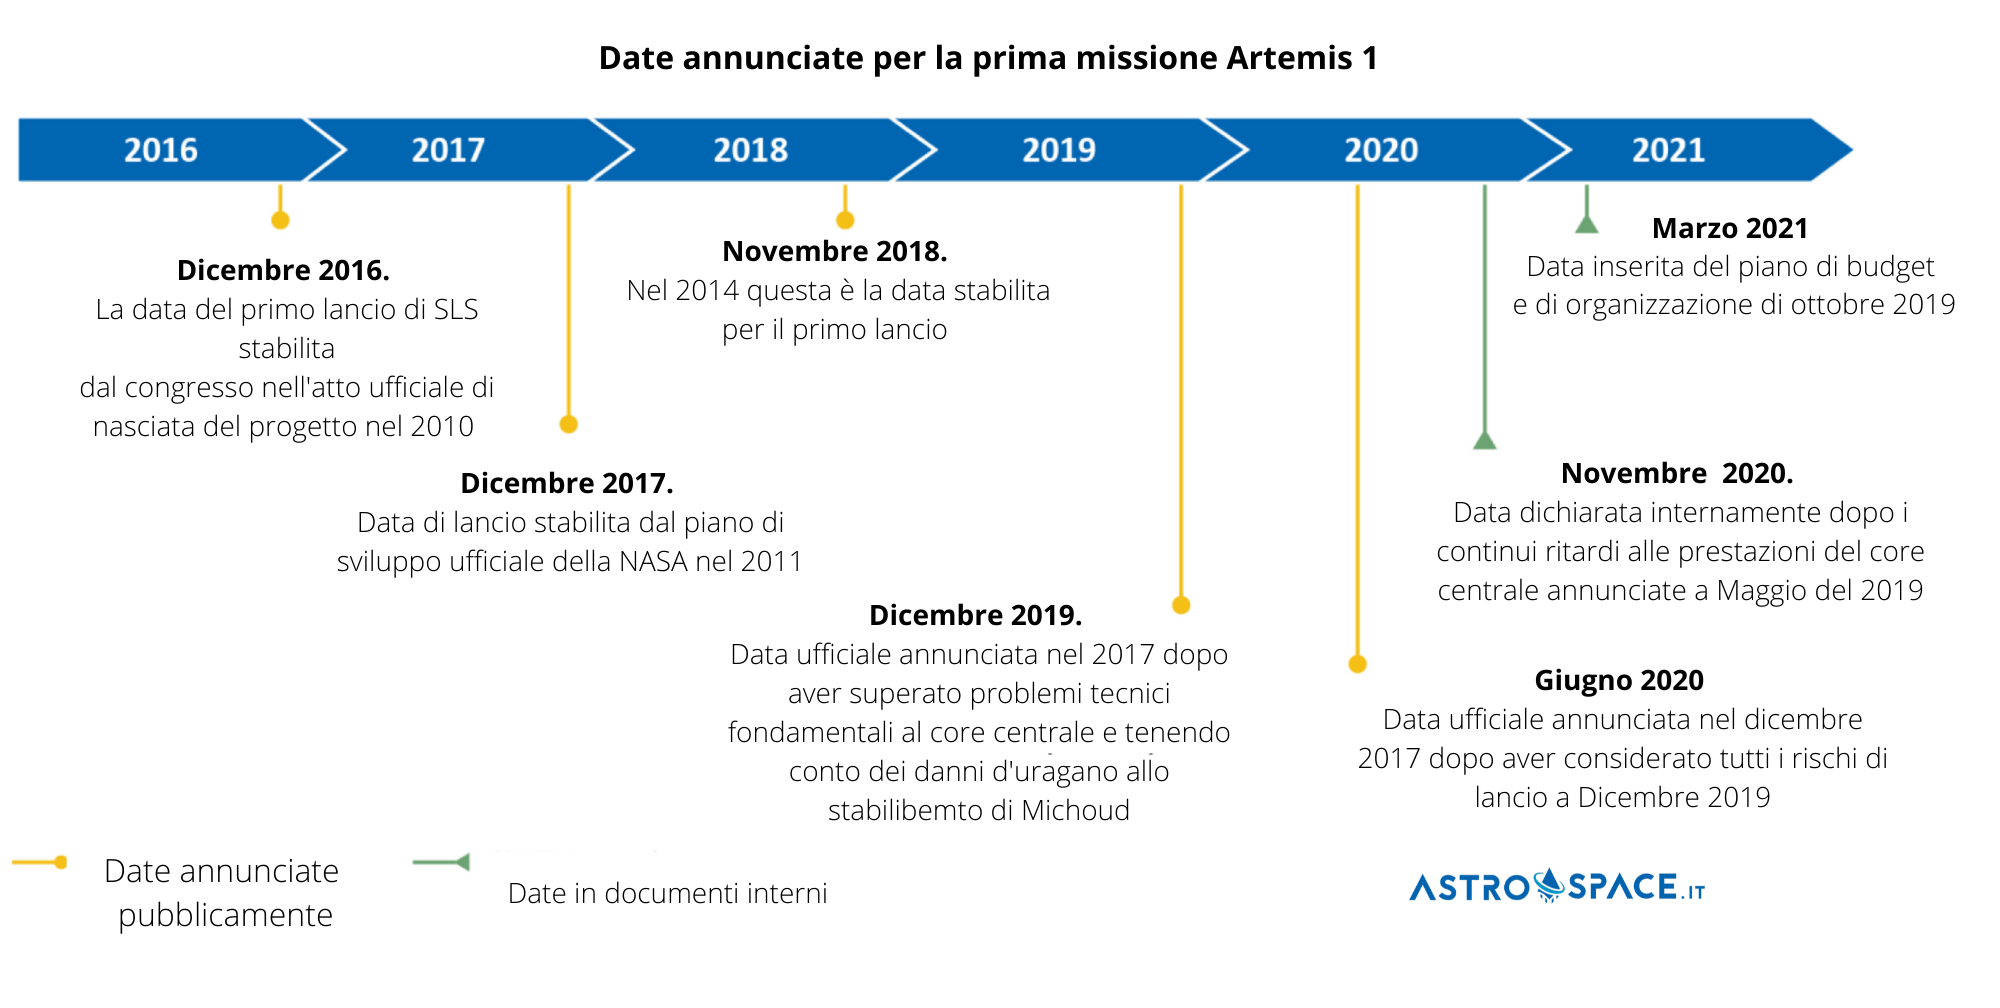 Date Artemis 1